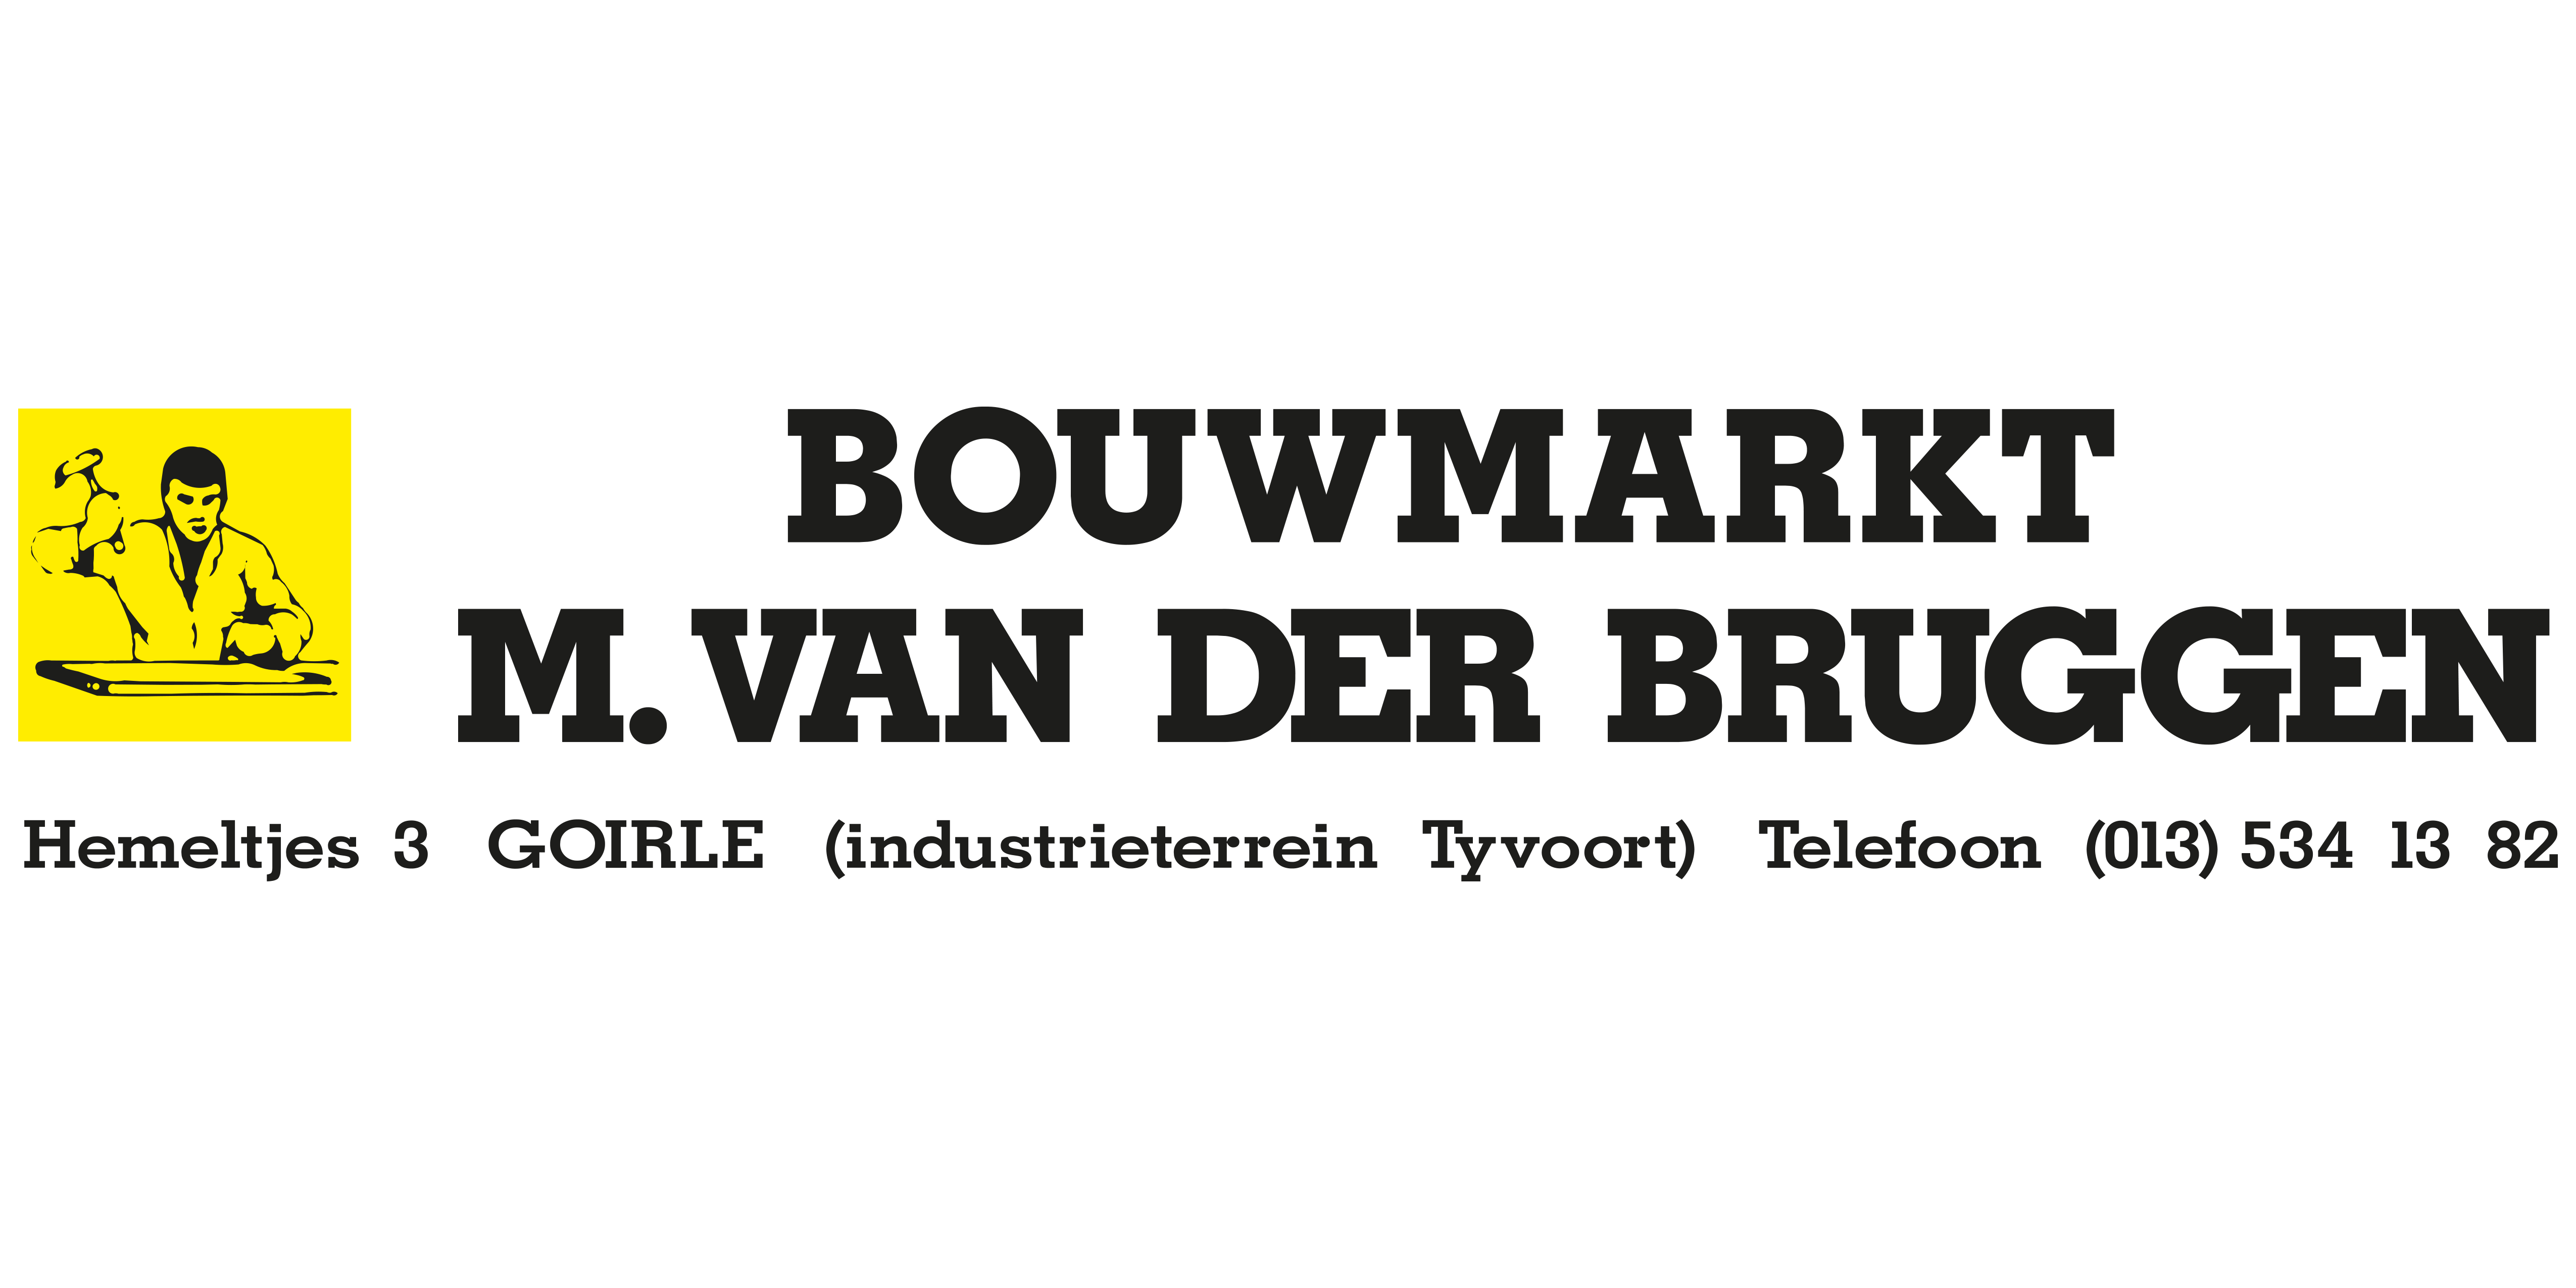 Bouwmarkt van der Bruggen